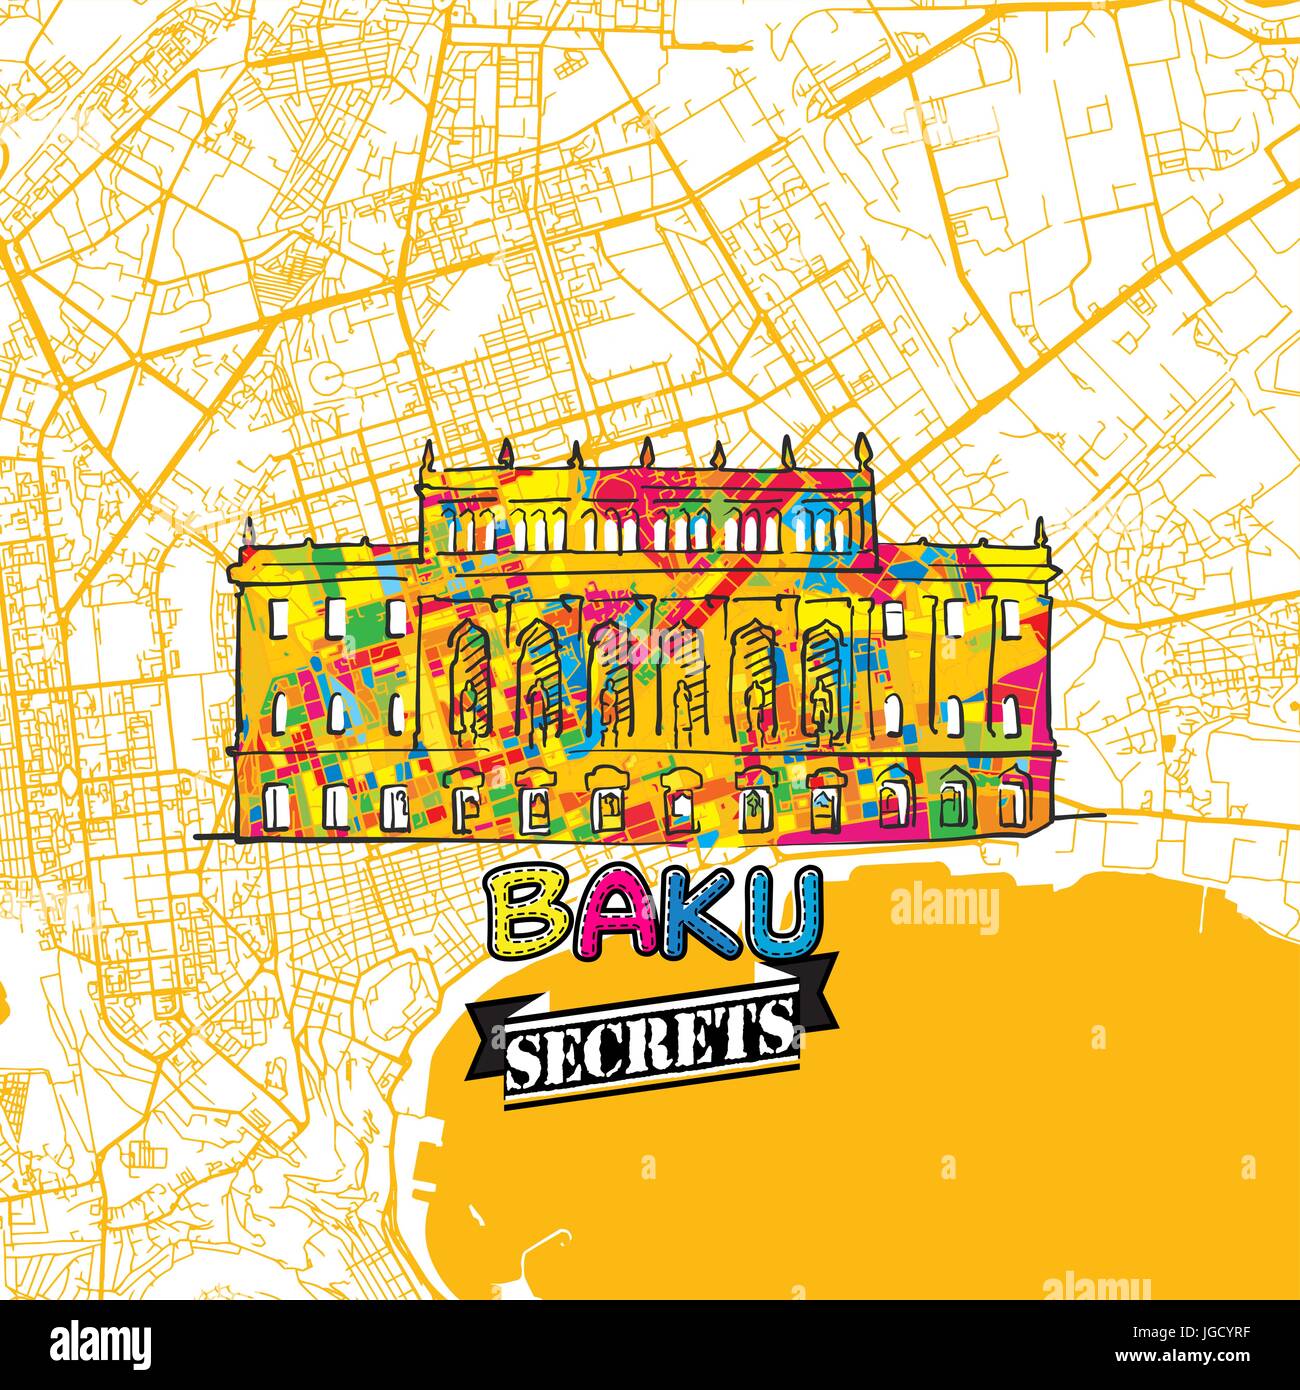 Baku reisen Geheimnisse Art Map für die Zuordnung von Experten und Reiseführer. Handgemachte Stadt Logo, Typo-Abzeichen und Hand gezeichnete Vektorbild auf Top sind gruppiert und m Stock Vektor